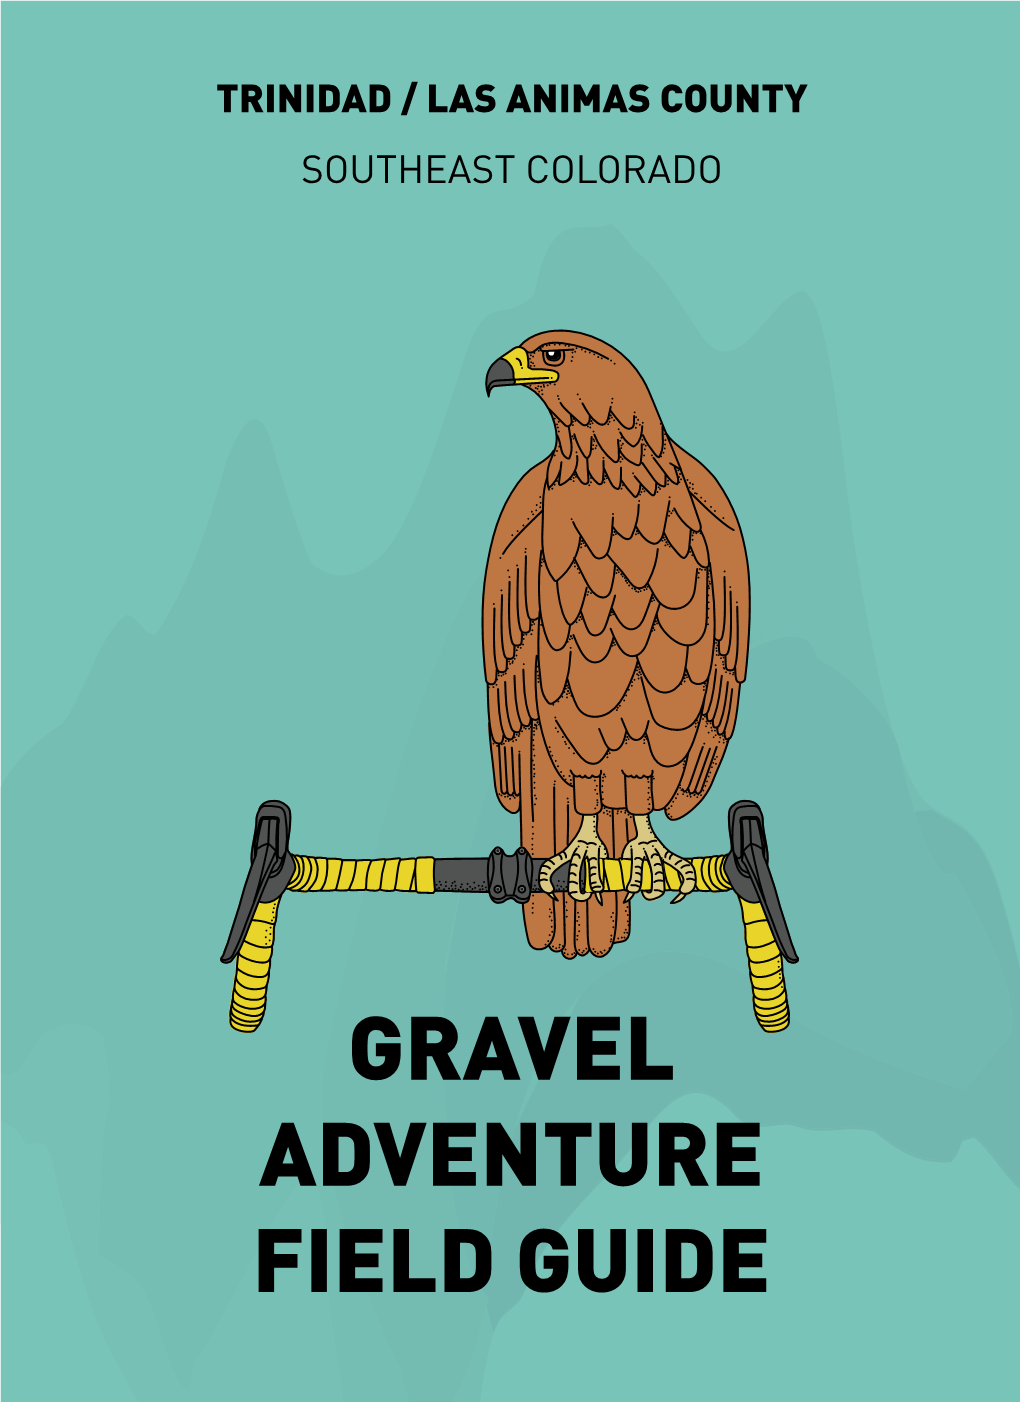 Gravel Adventure Field Guide Trinidad / Las Animas County Southeast Colorado